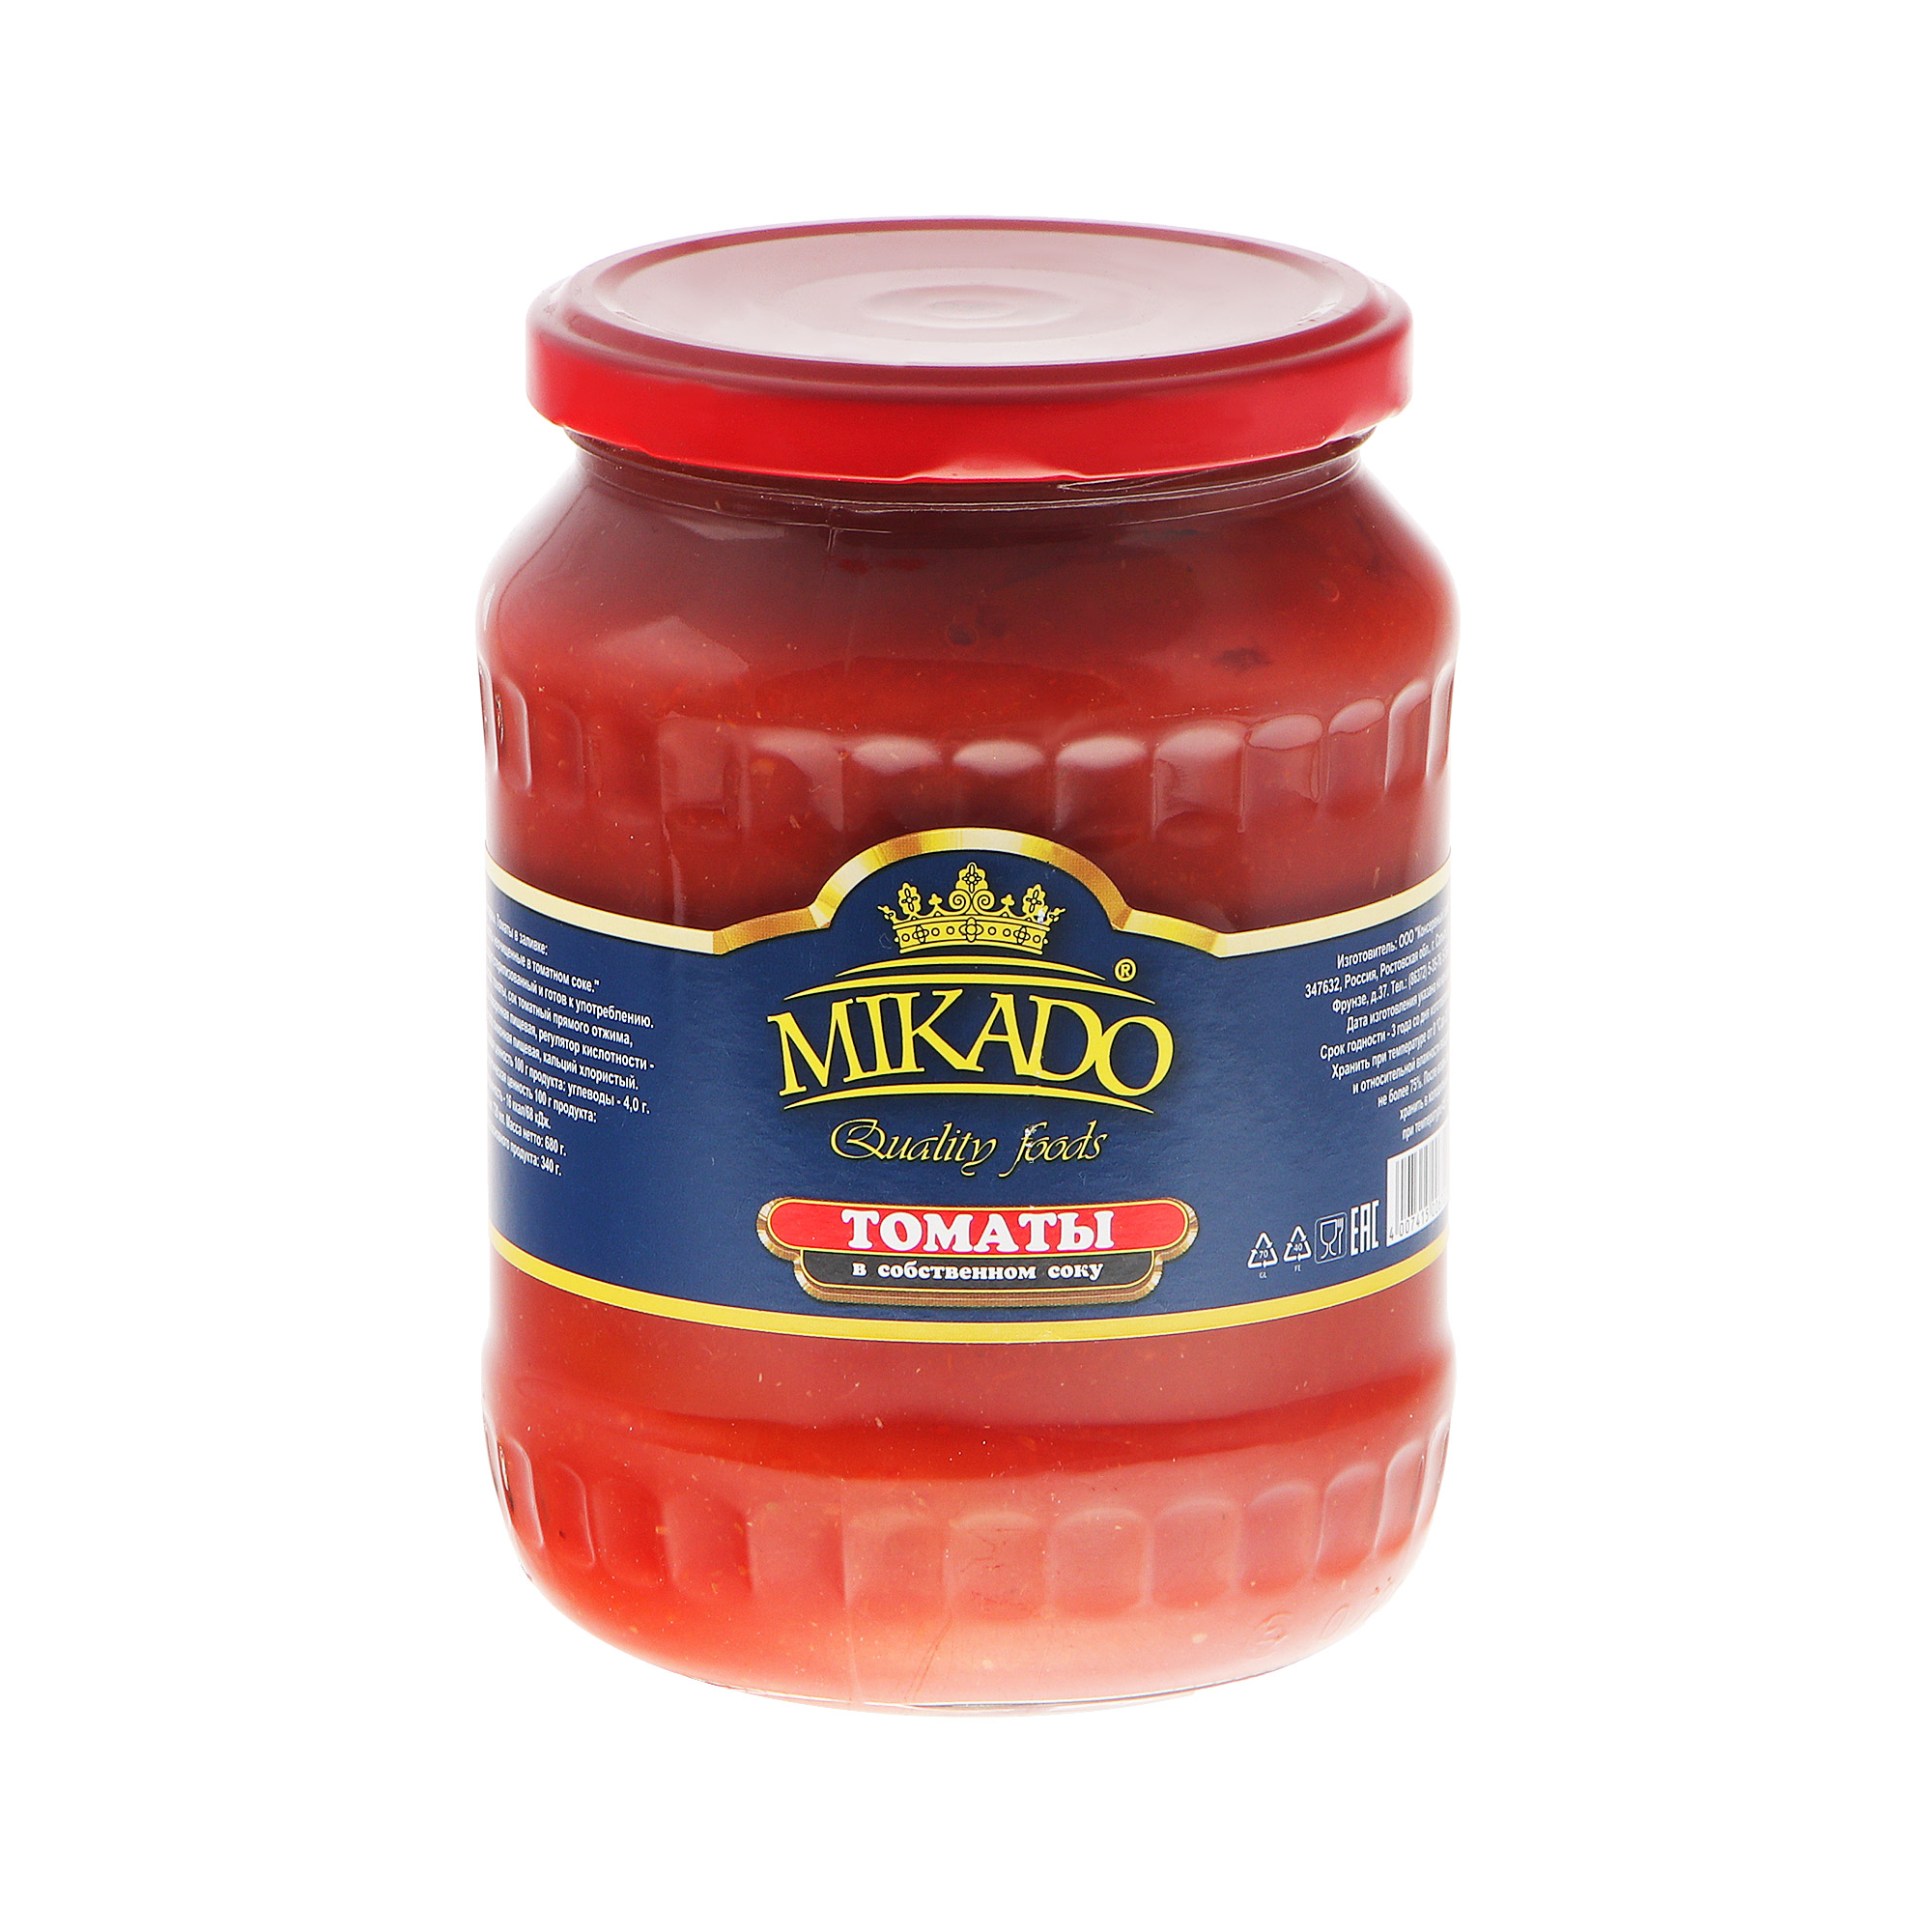 Томаты Mikado в собственном соку 720 мл томаты federici целые в собственном соку 425 мл